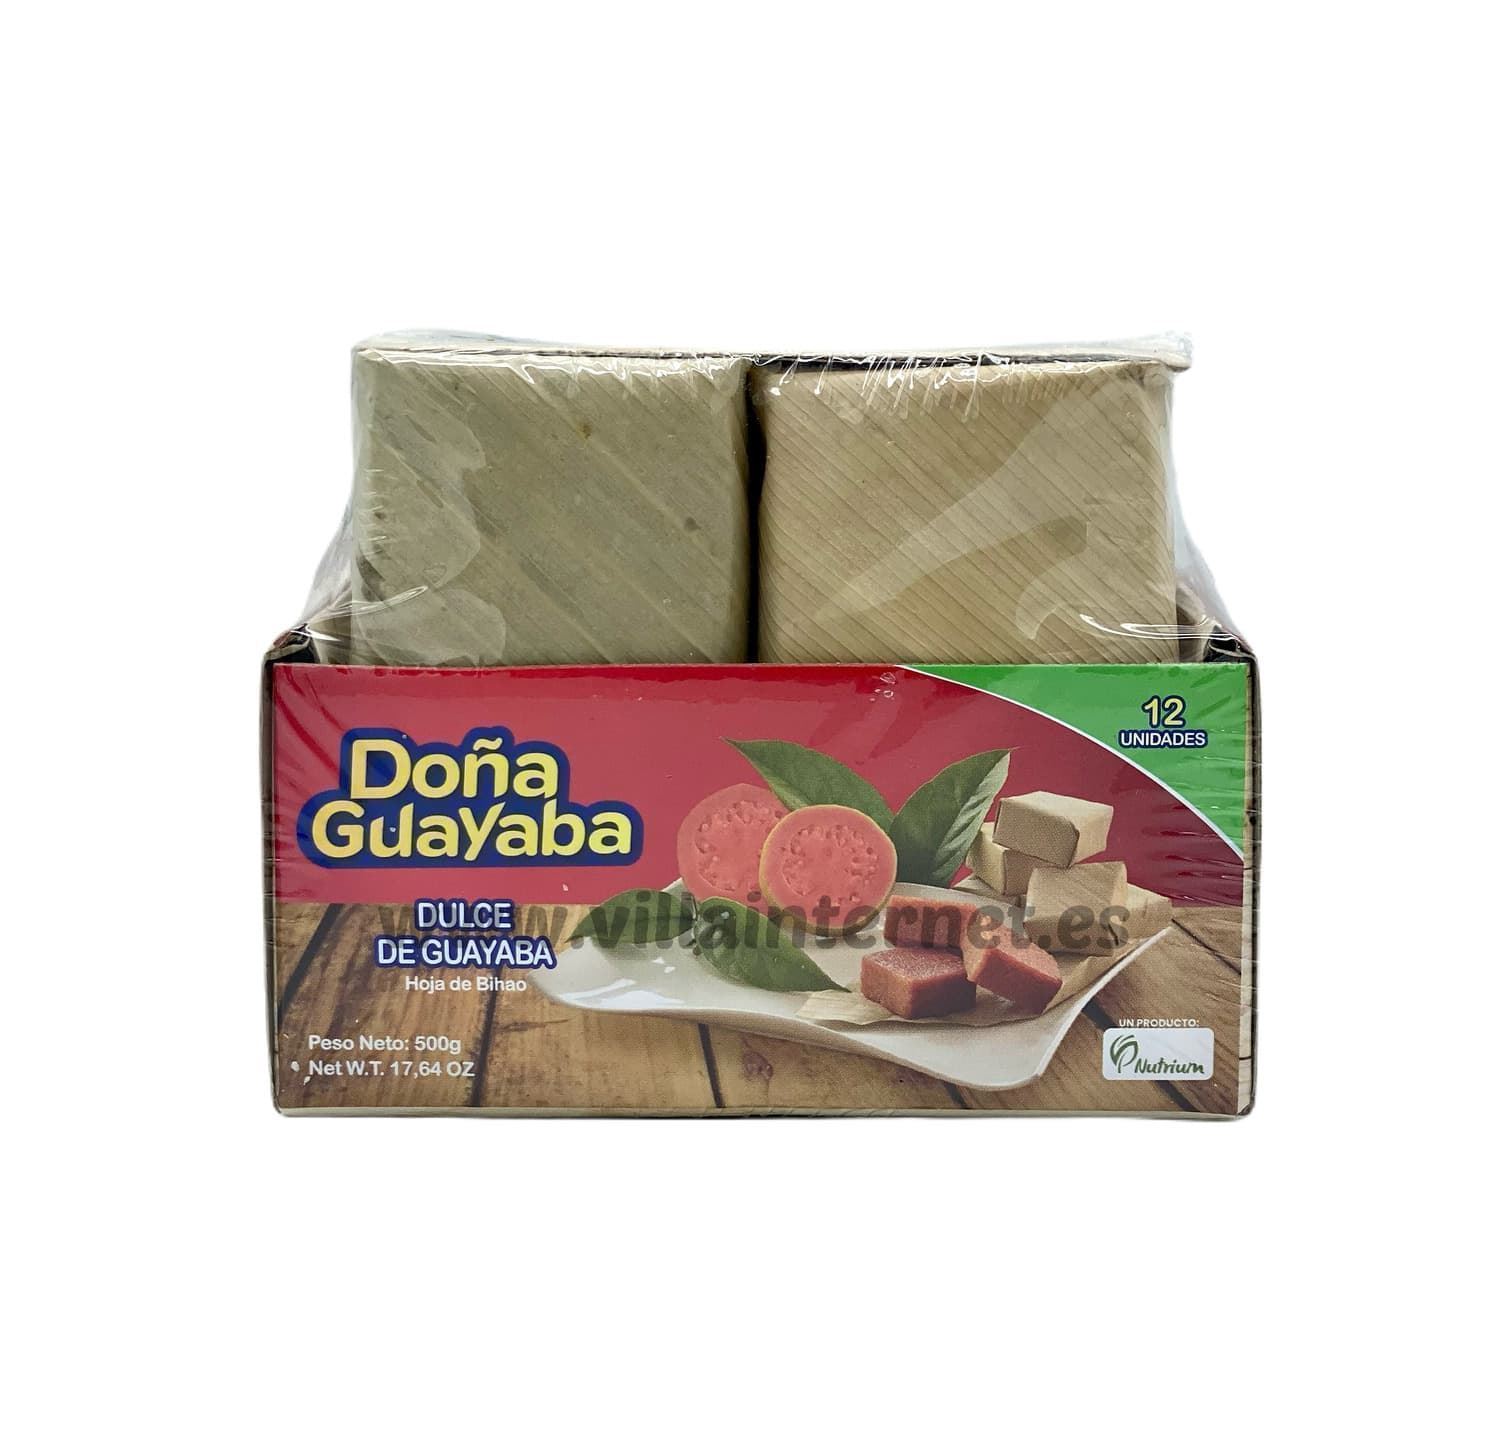 Bocadillo de guayaba en hoja Doña Guayaba 12uds. - Imagen 1